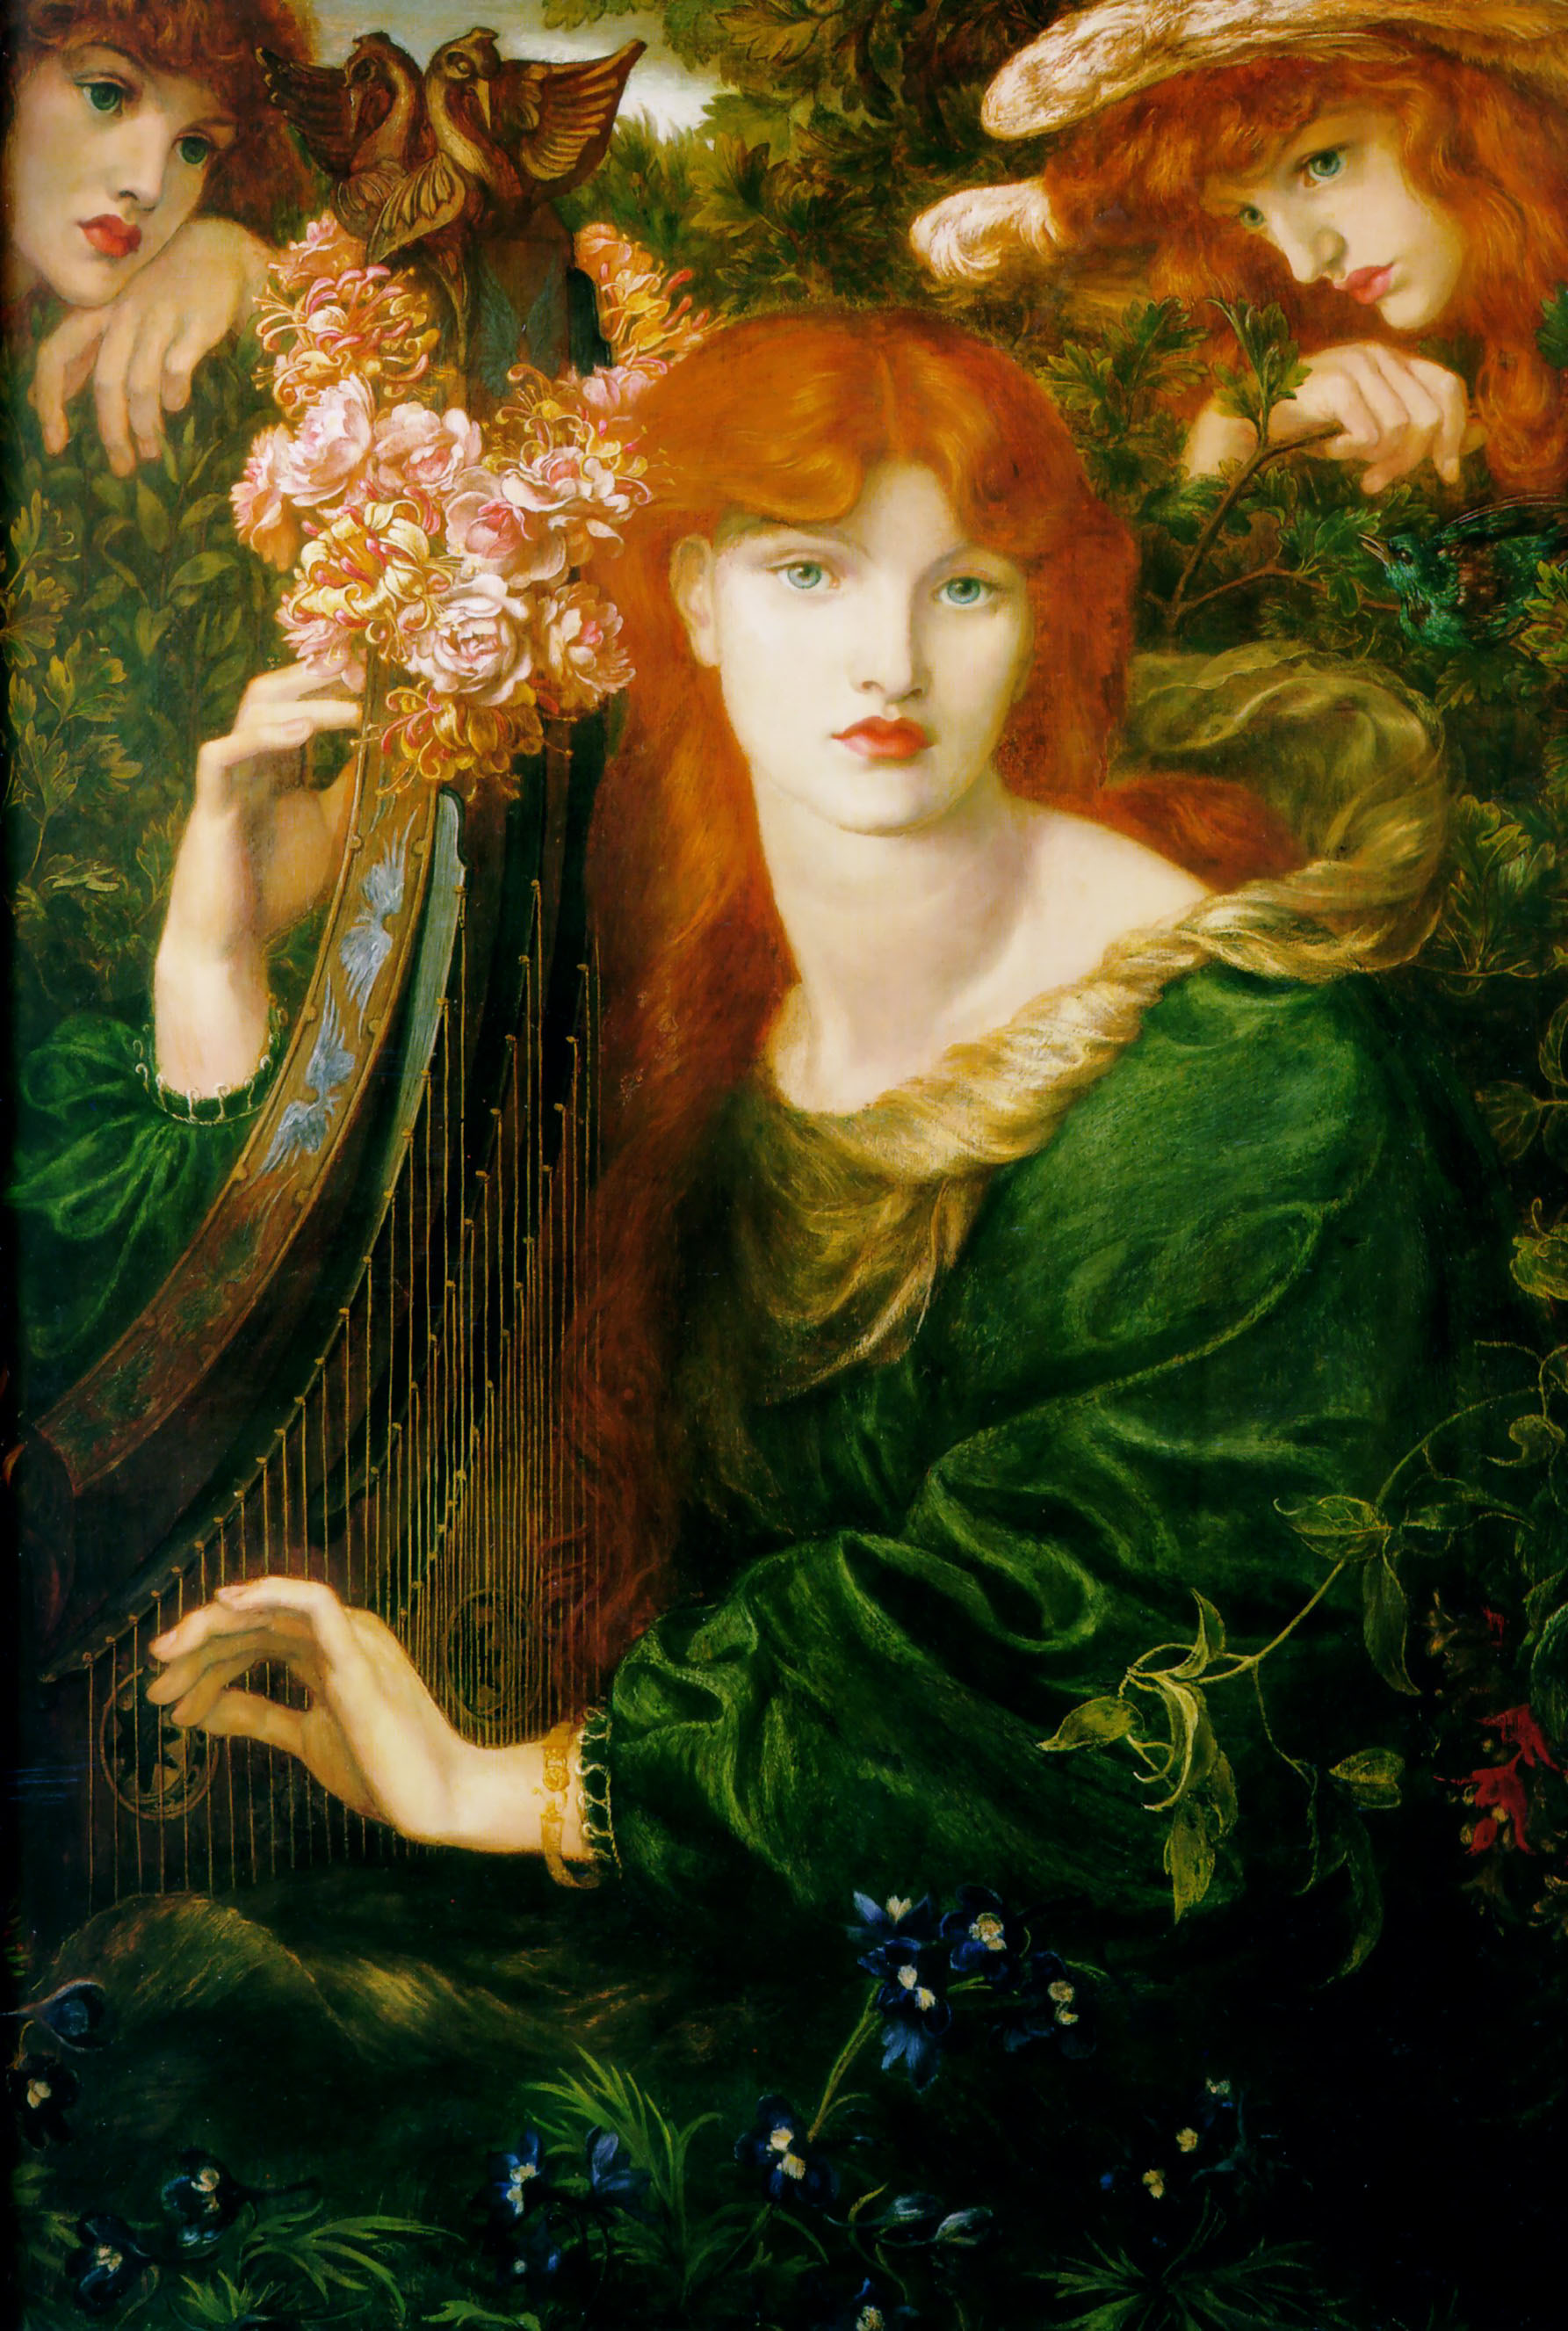 المرأة المُكللة by Dante Gabriel Rossetti - 1873 - الأبعاد: 124 × 85 سم 